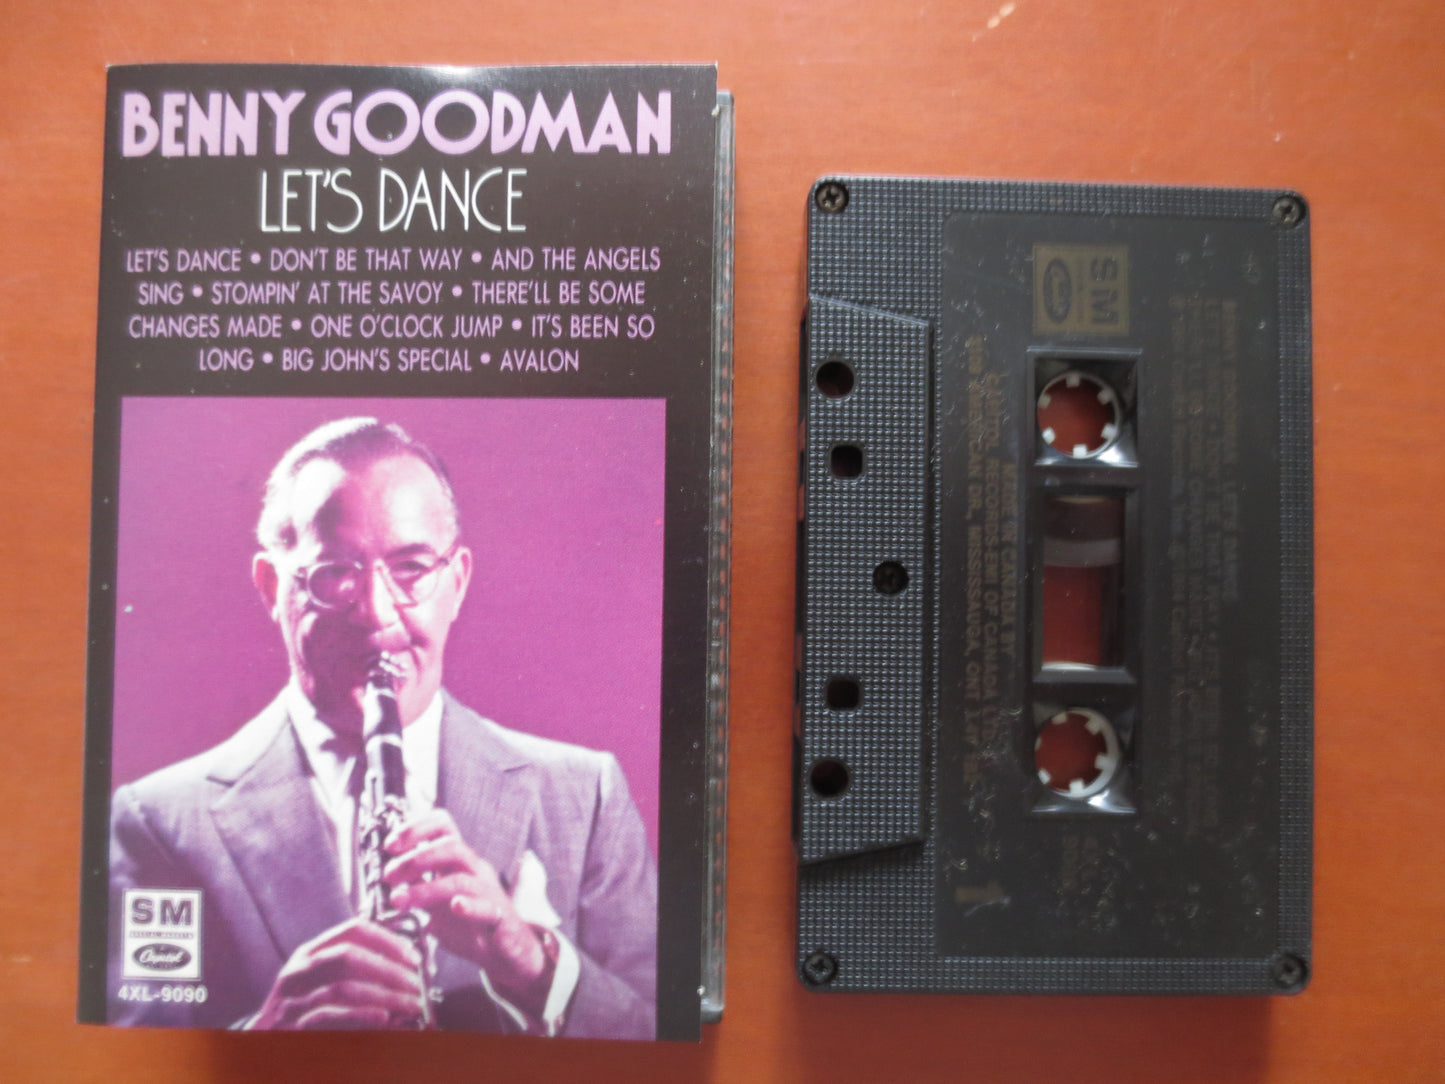 BENNY GOODMAN Tape, Let's DANCE Album, Benny Goodman, Jazz Music, Jazz Tape, Jazz Cassette, Tape Cassette, 1984 Cassette